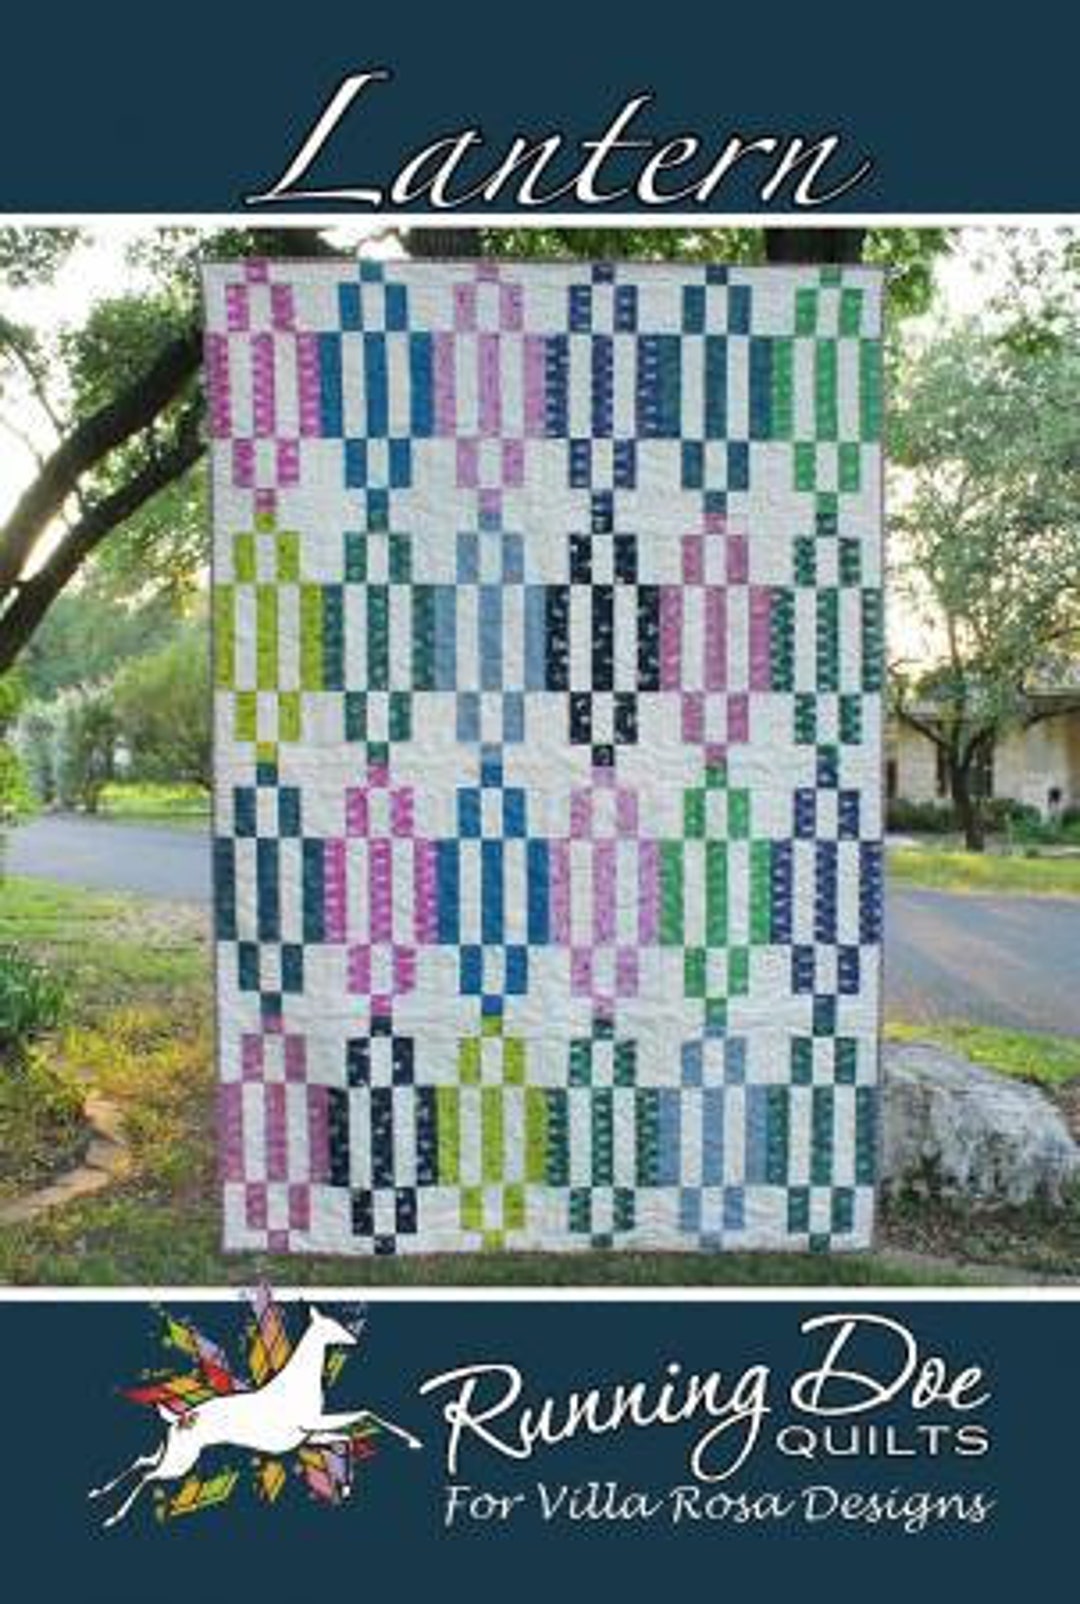 Lantern Quilt Pattern by Running Doe Quilts for Villa Rosa Designs - Etsy